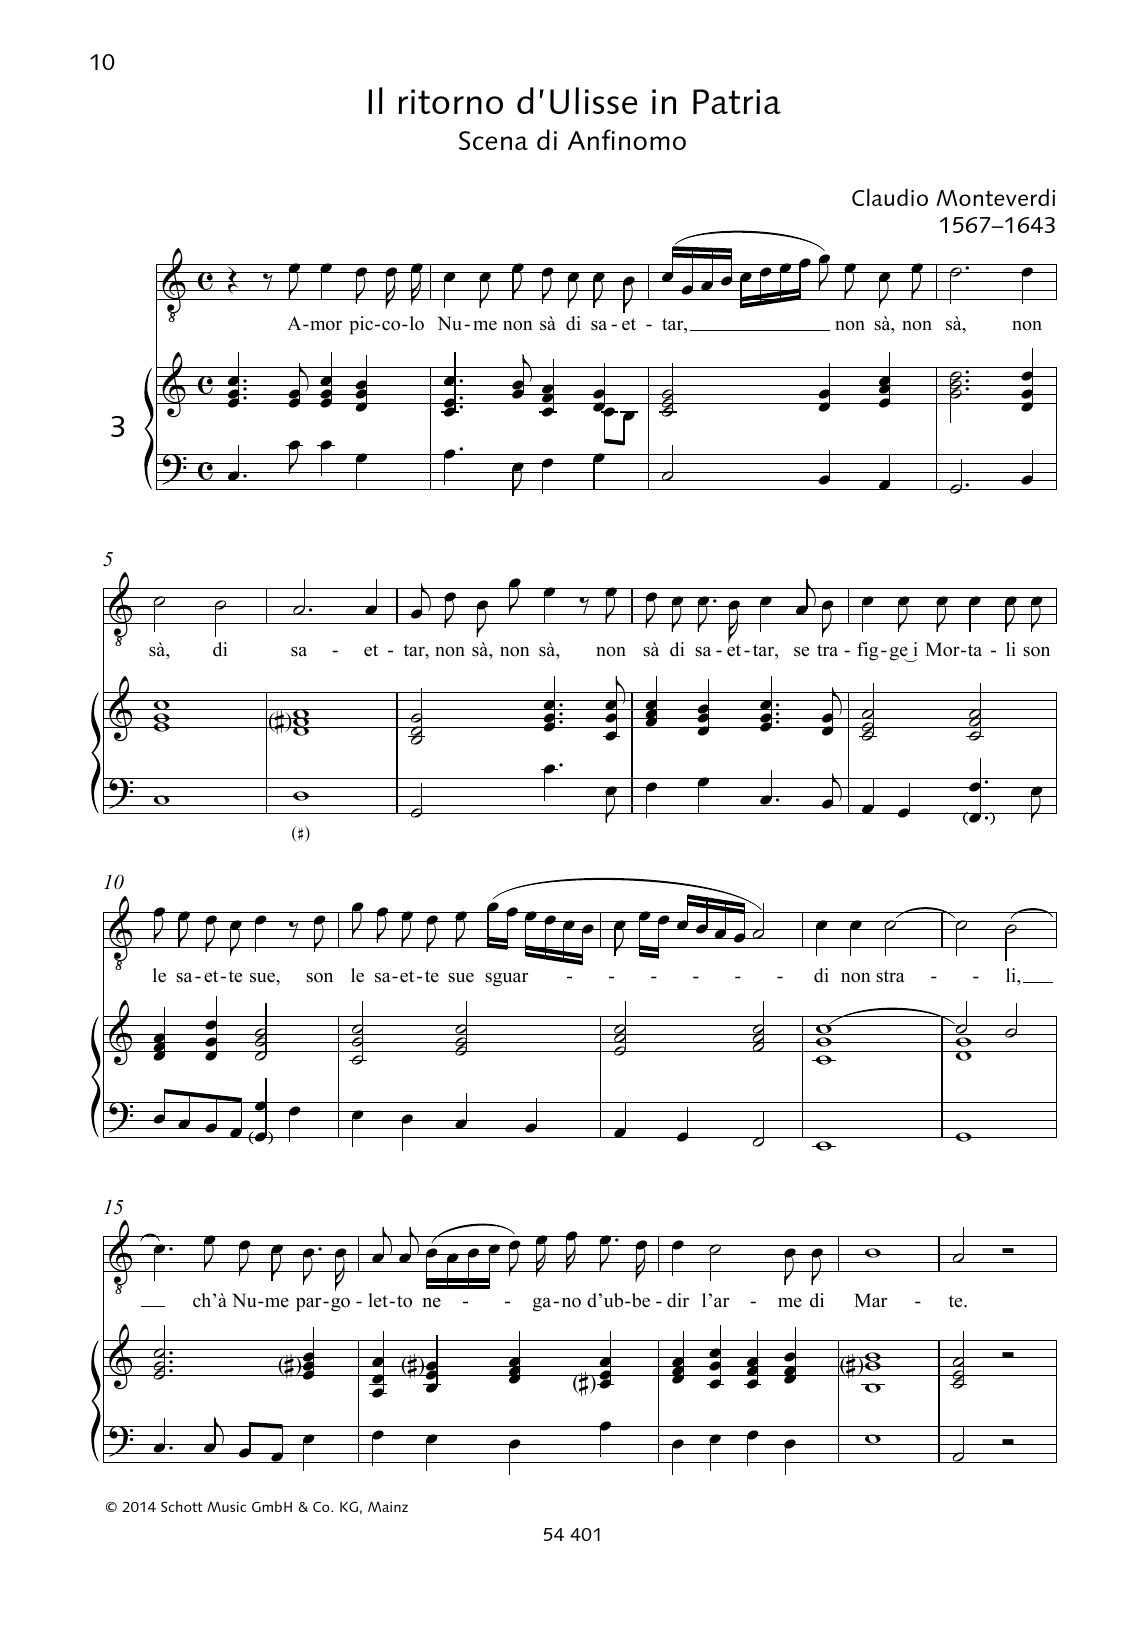 Claudio Monteverdi Amor piccolo Nume non sà di saettar Sheet Music Notes & Chords for Piano & Vocal - Download or Print PDF